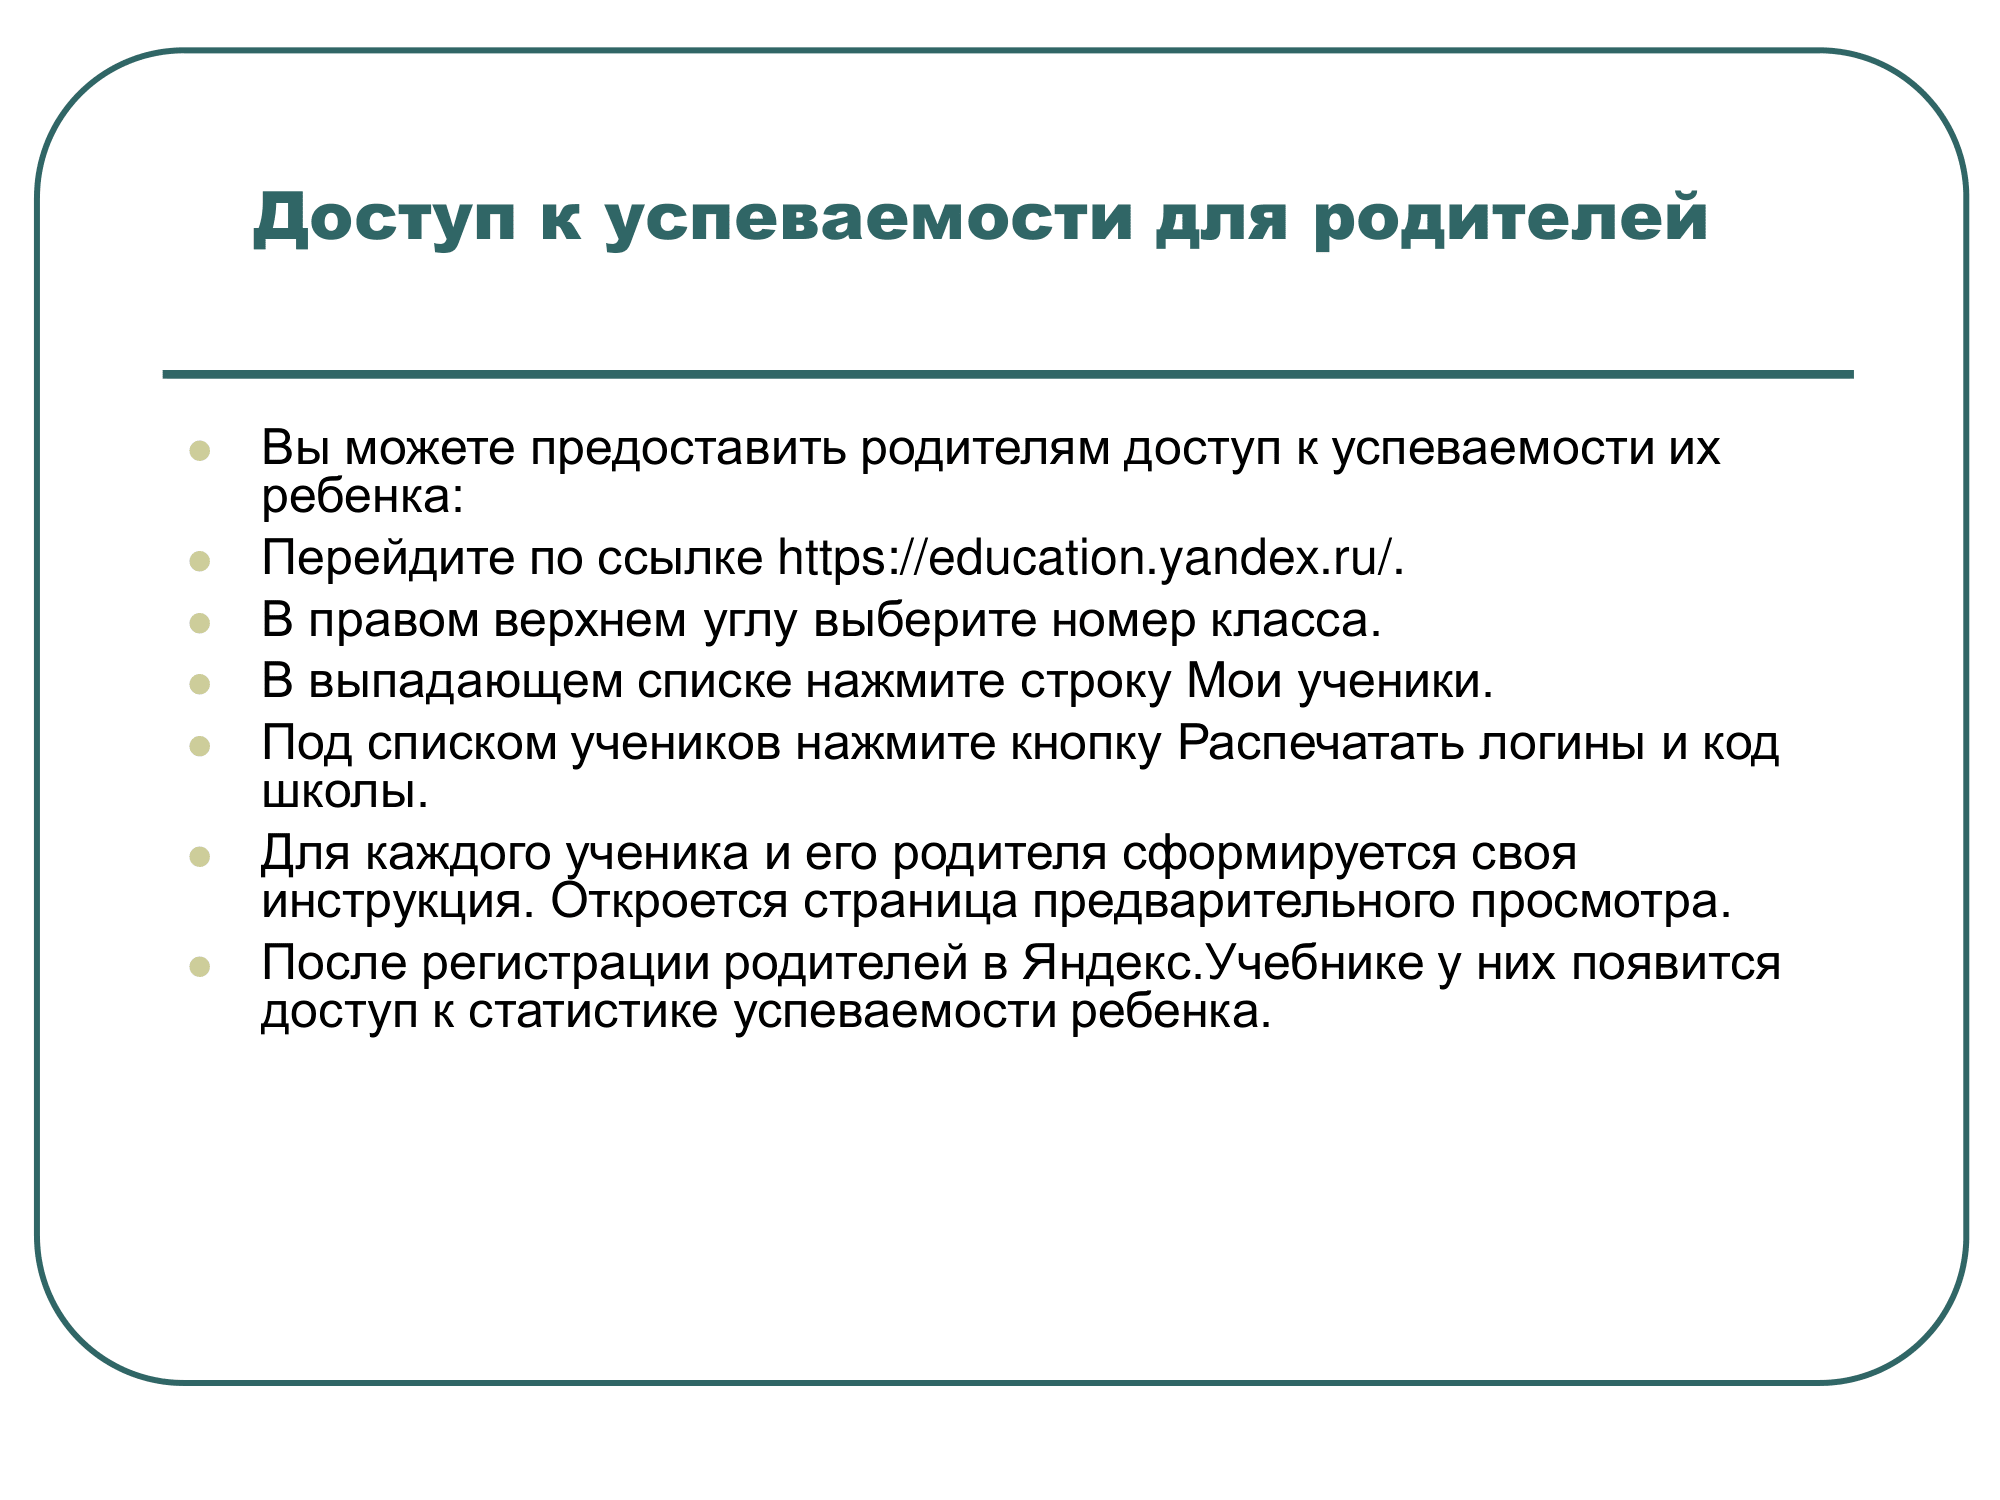 яндекс учебник. Презентация к докладу Васильченко Т.В._0009